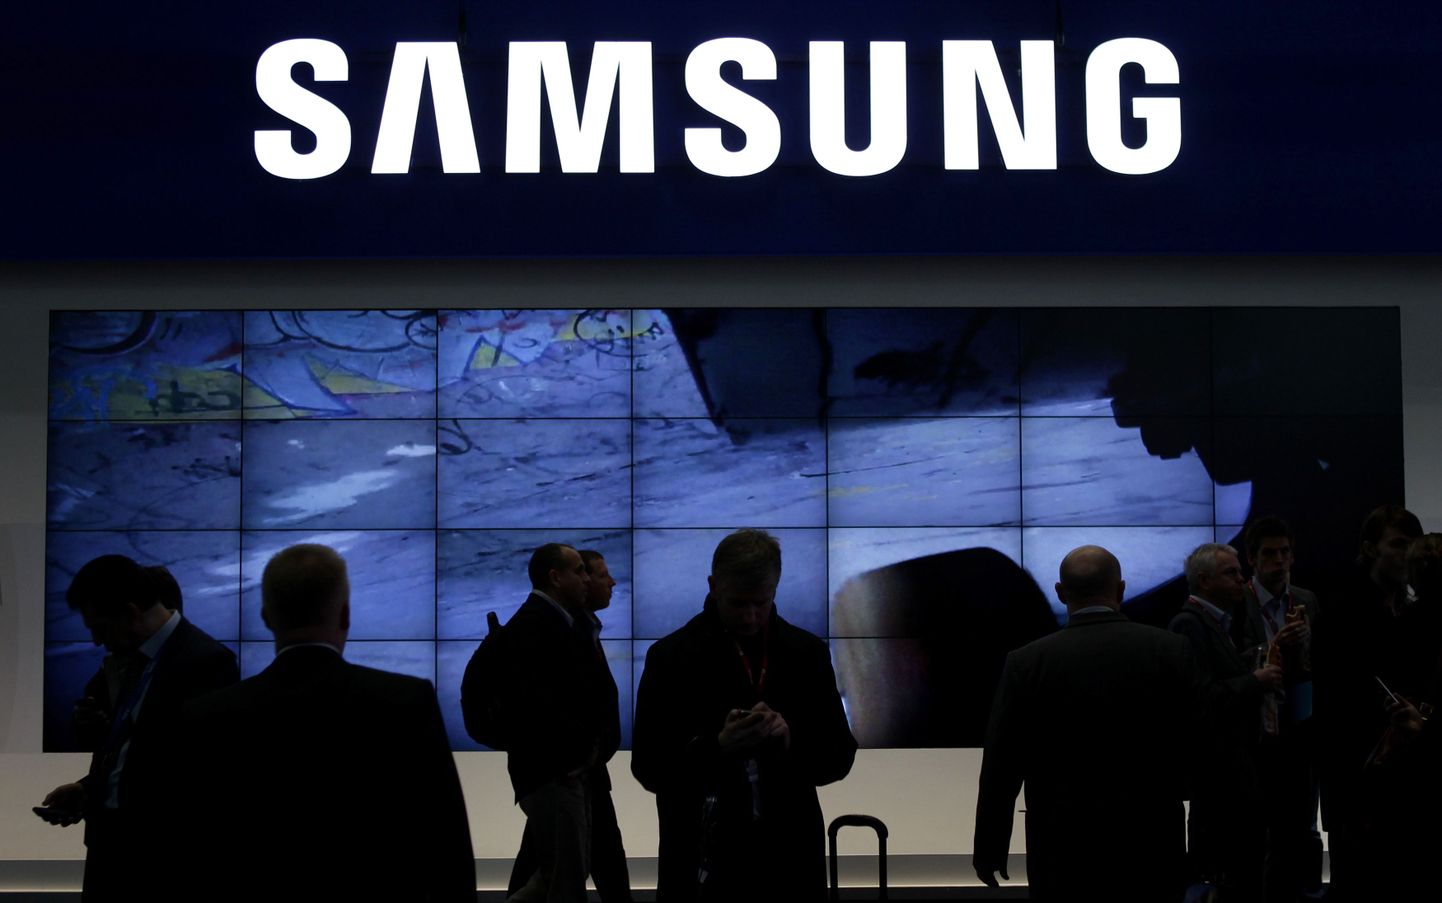 Samsungi tehase lekke tagajärjel kaotas elu üks inimene